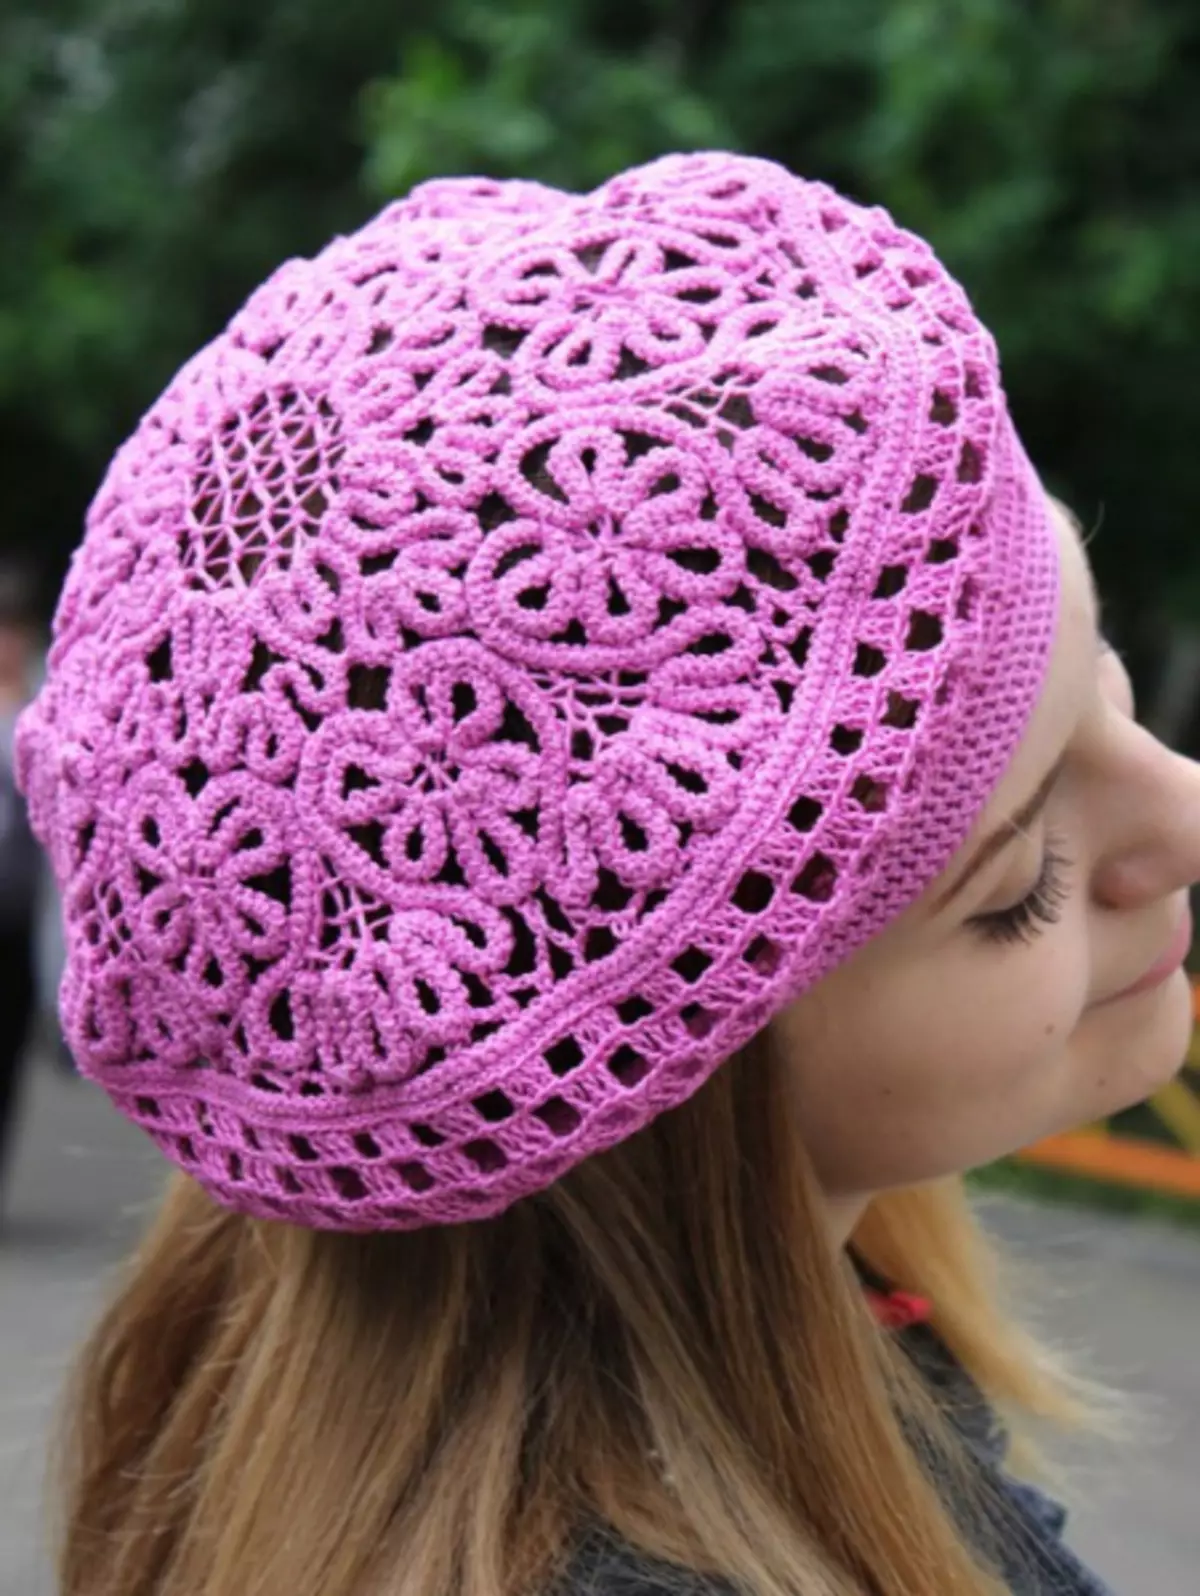 Կանանց ամառային գլխարկ Crochet. Վարպետության դաս տեսանյութով